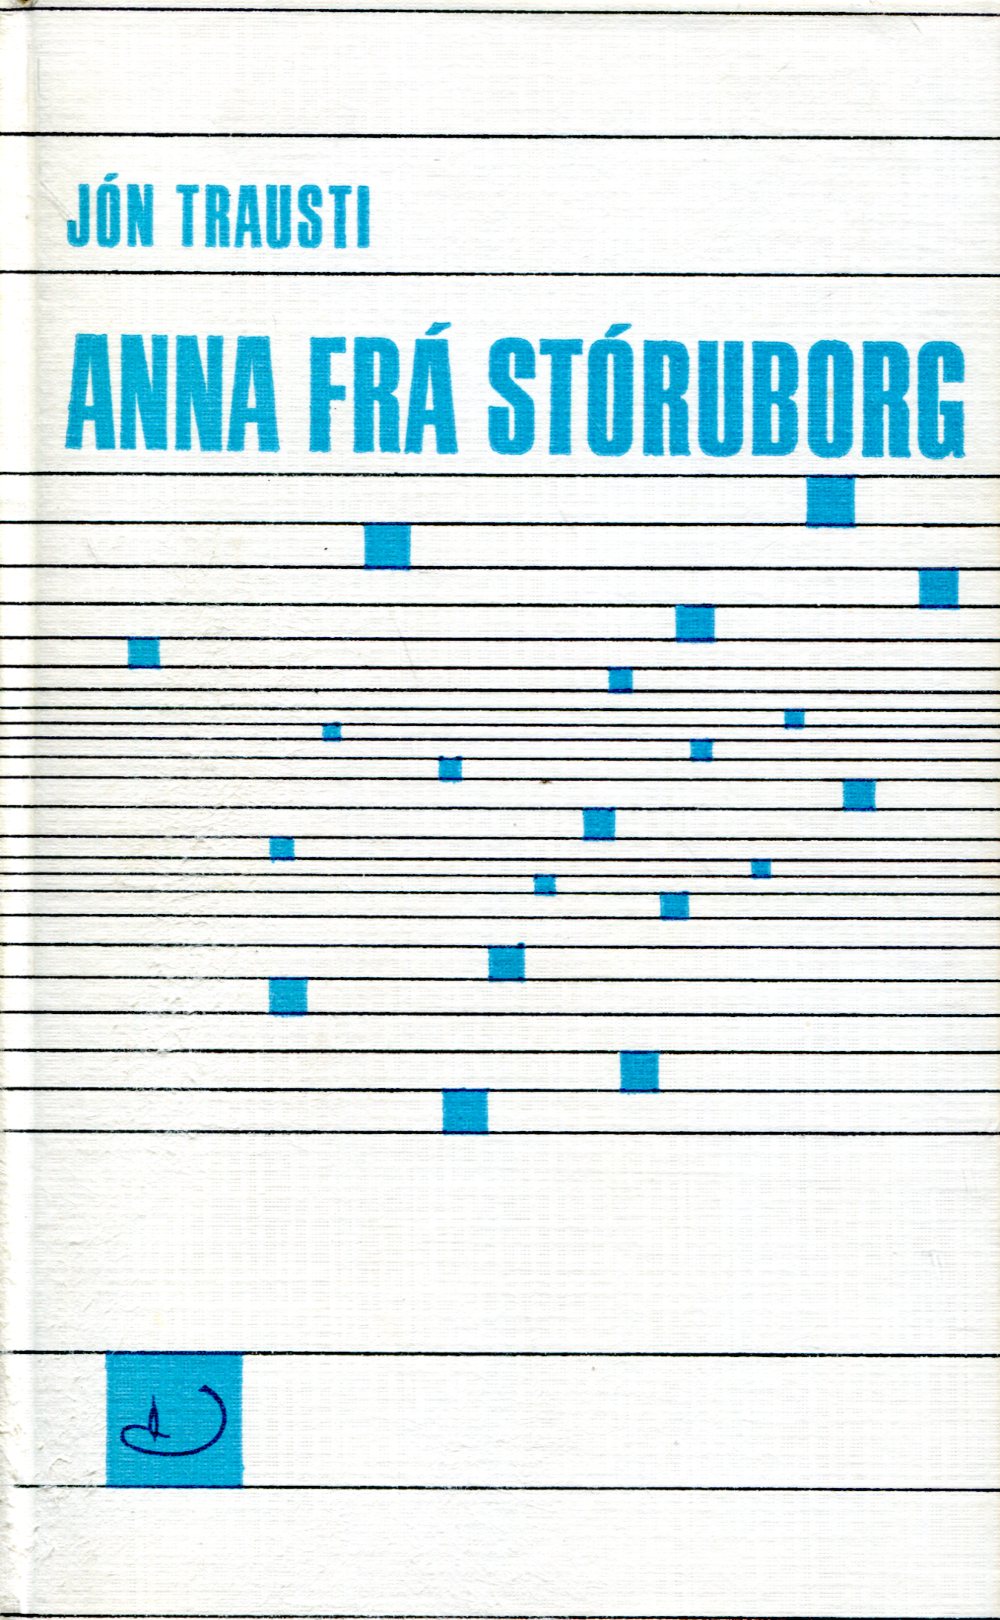 Anna frá Stóruborg - Jón Trausti - Almenna bókafélagið 1967